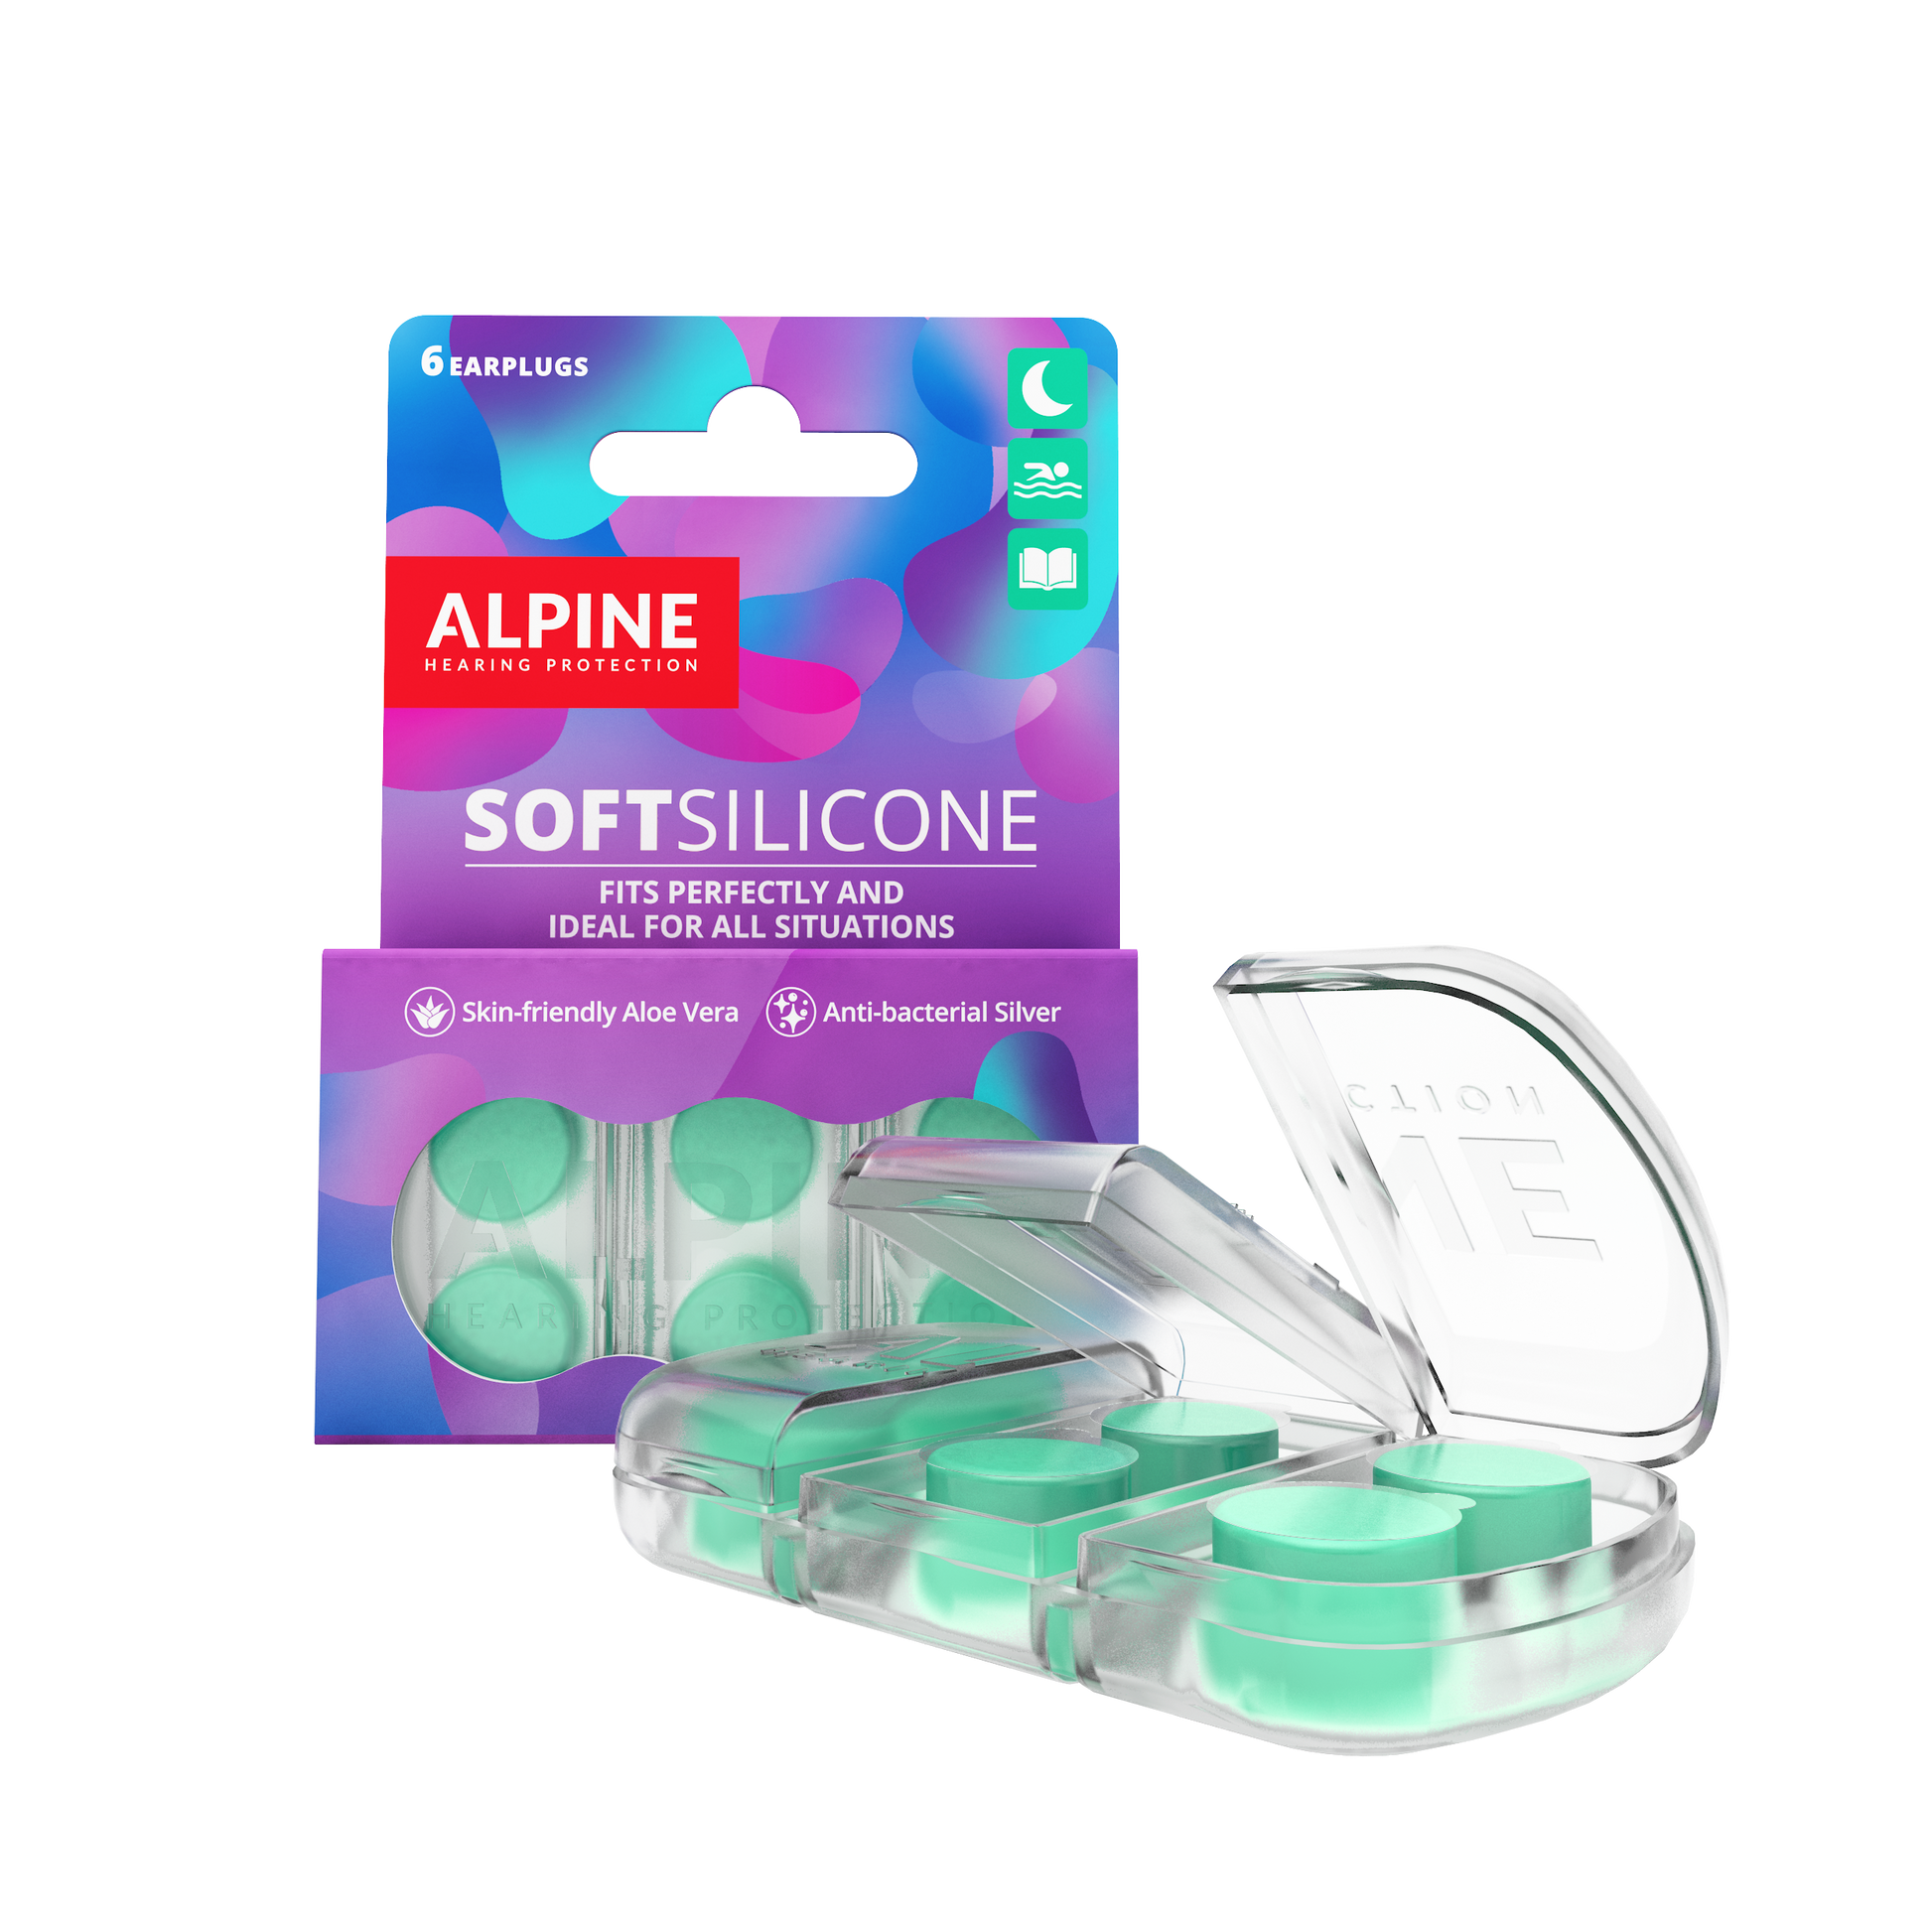 Bouchons d'oreilles Alpine SleepSoft Protection auditive